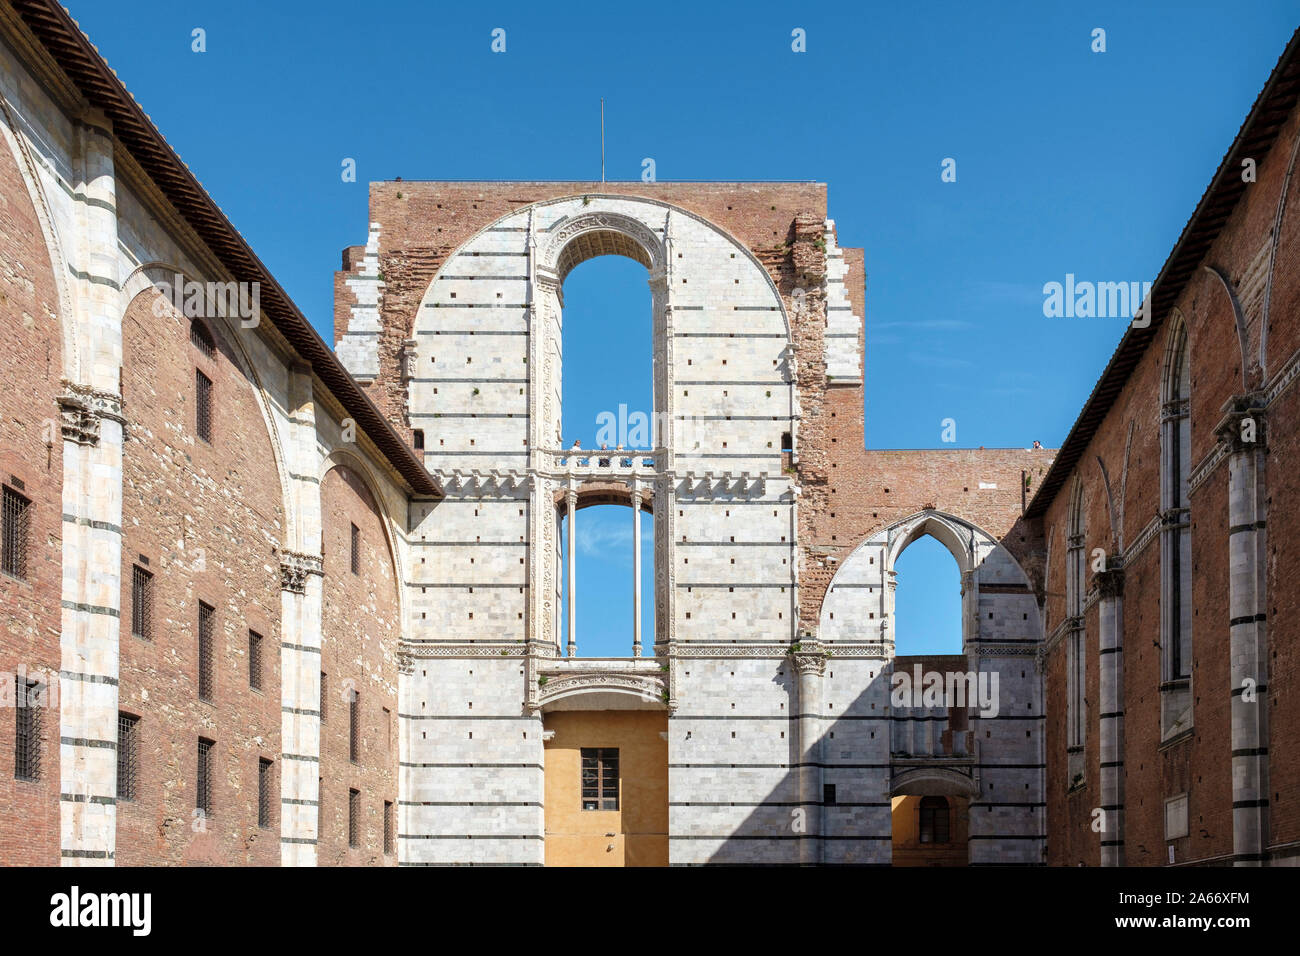 Facciatone, incompiuta faÃ§ade del Duomo di Siena (Cattedrale di Siena), Siena, Toscana, Italia, Europa. Foto Stock